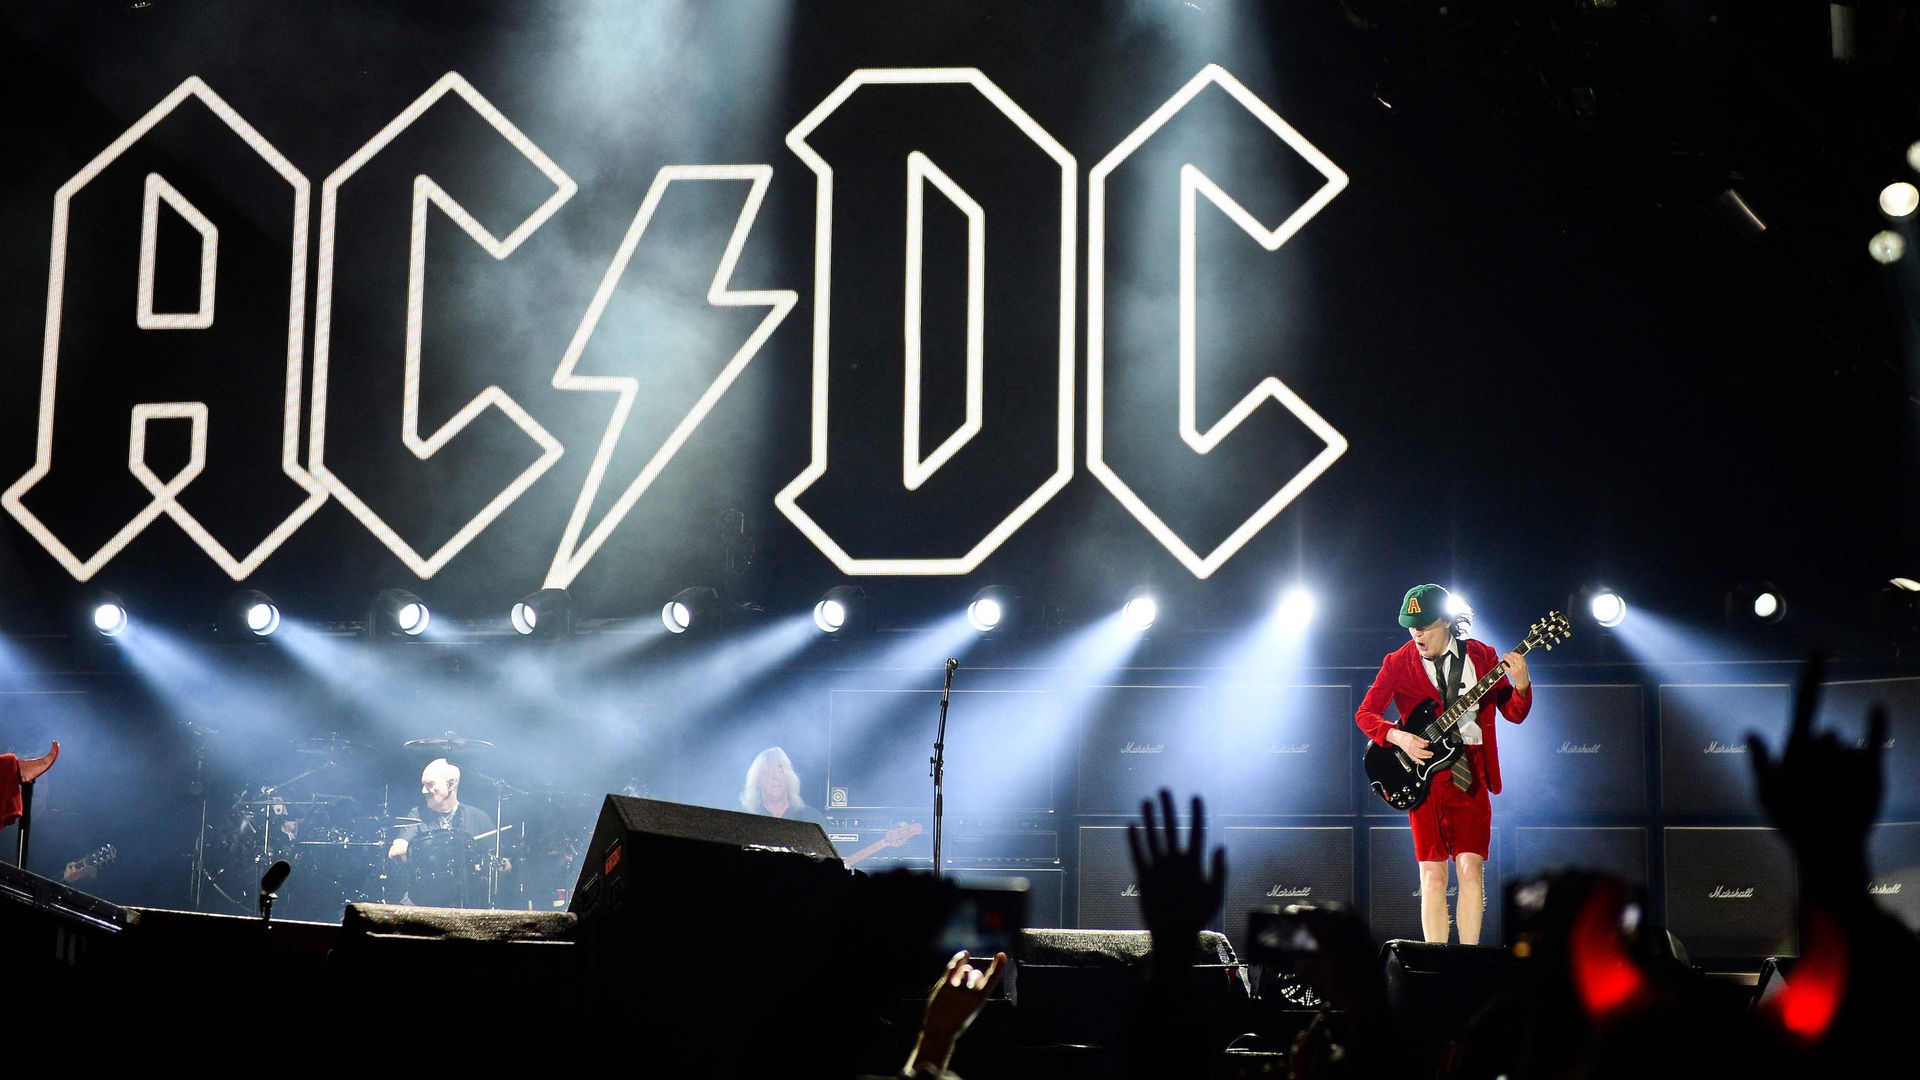 Stichtag - 31. Dezember 1973: Australische Hardrockband AC/DC tritt  erstmals öffentlich auf - Stichtag - WDR